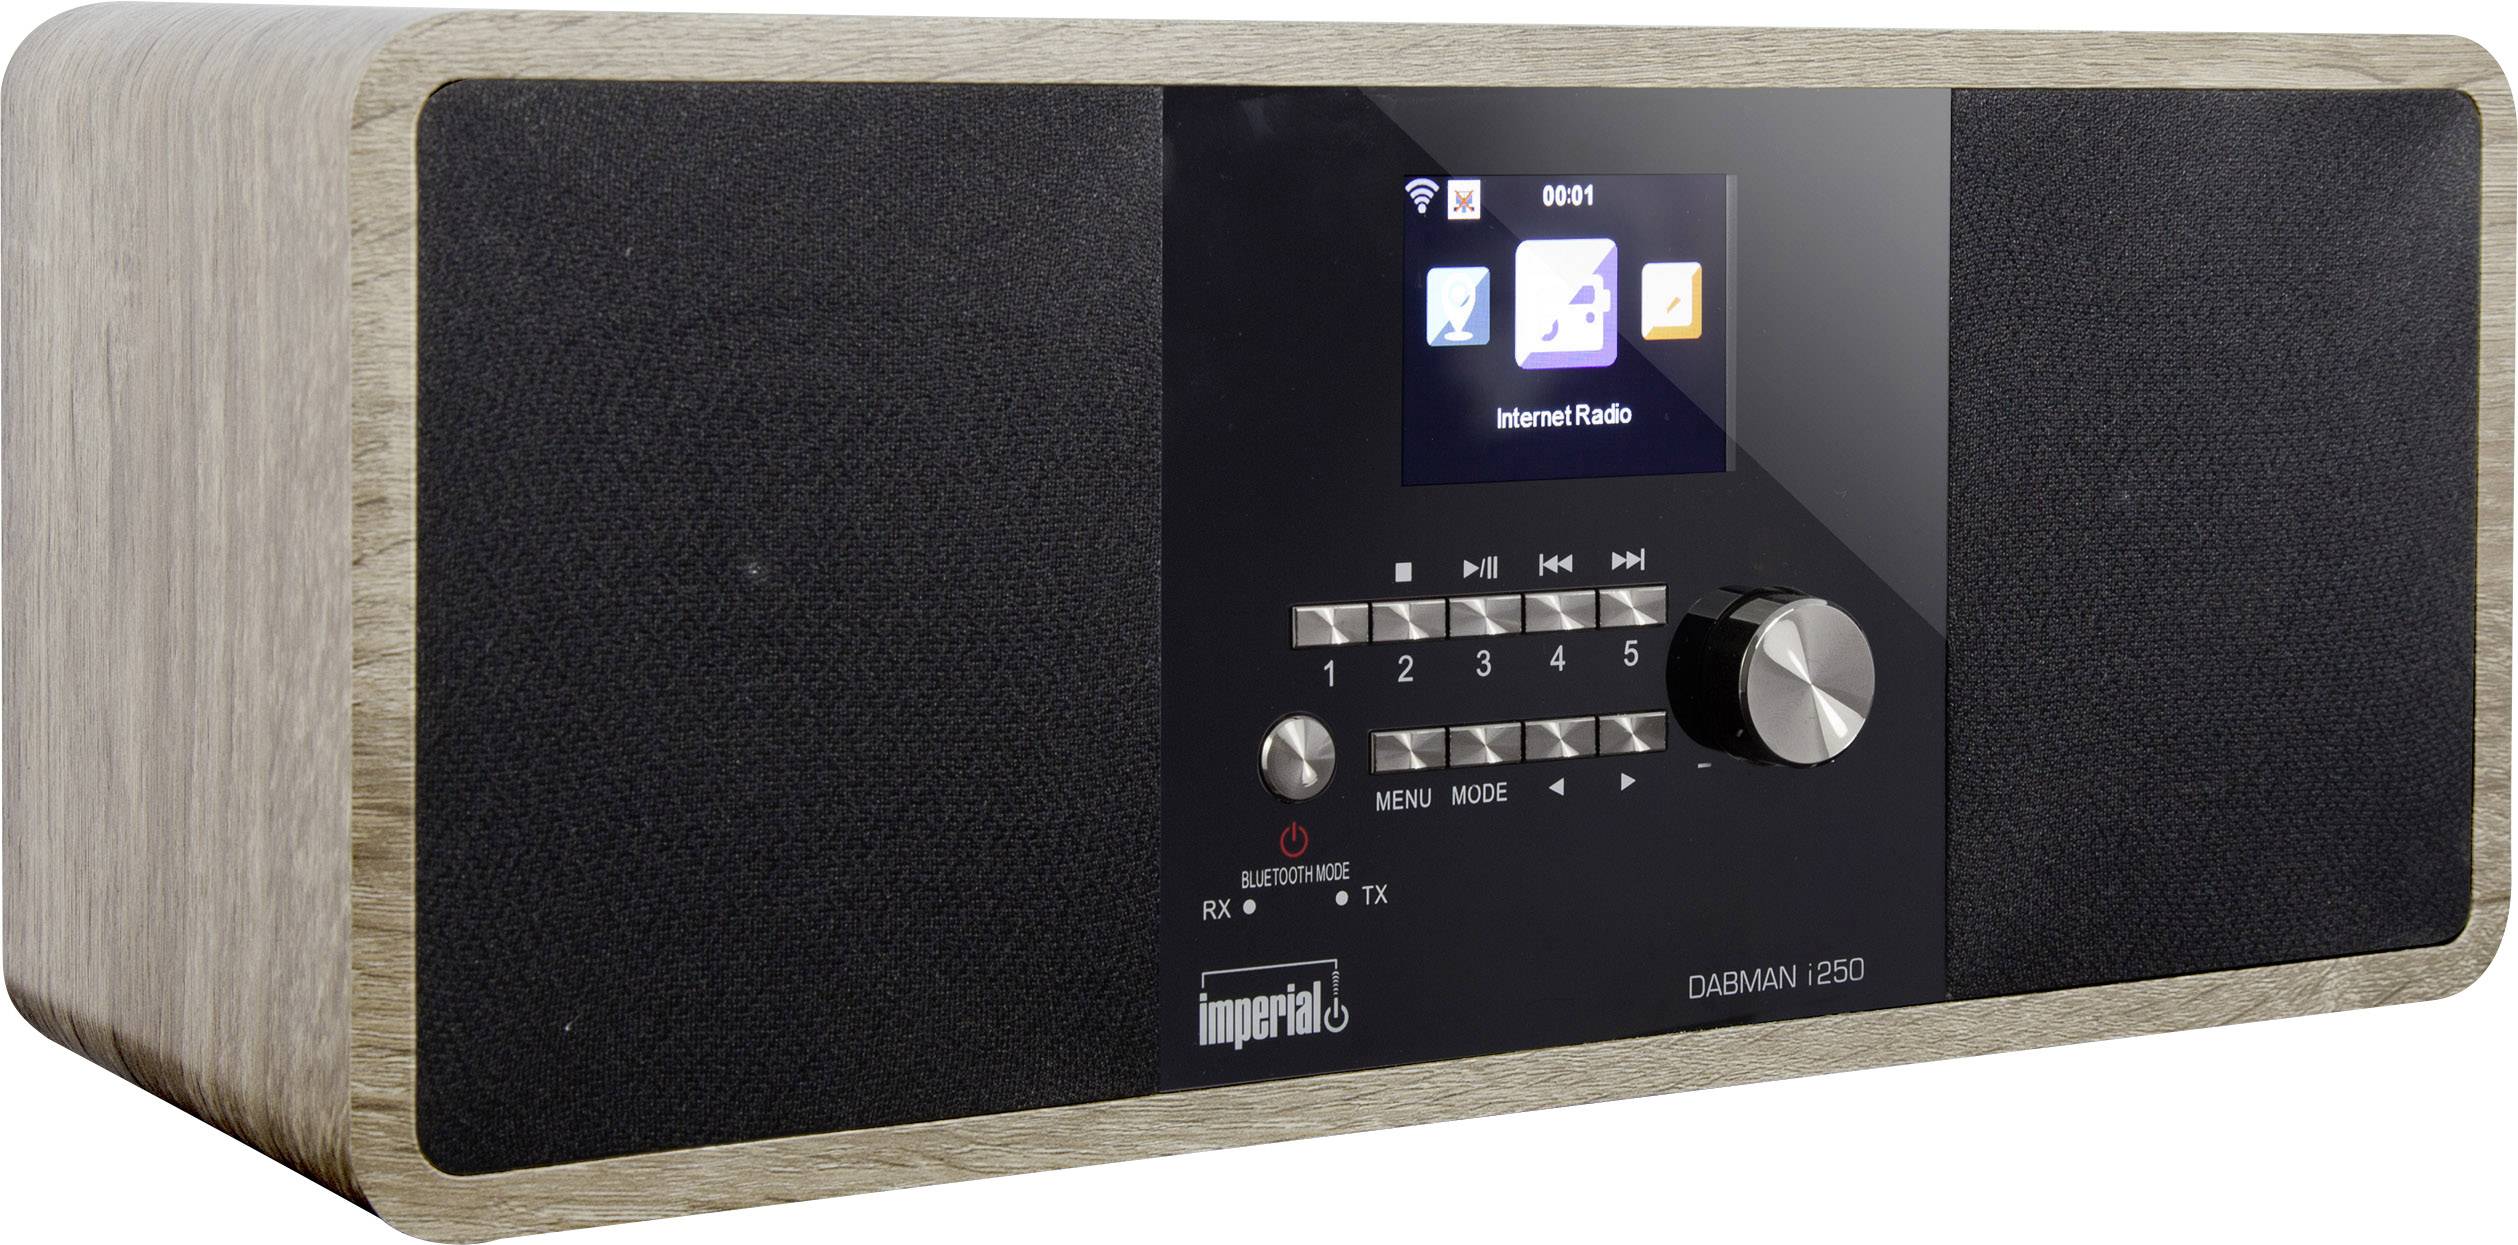 Imperial DABMAN i250 Internet desk radio DAB+, FM AUX, Bluetooth, USB, Internet radio Brown |